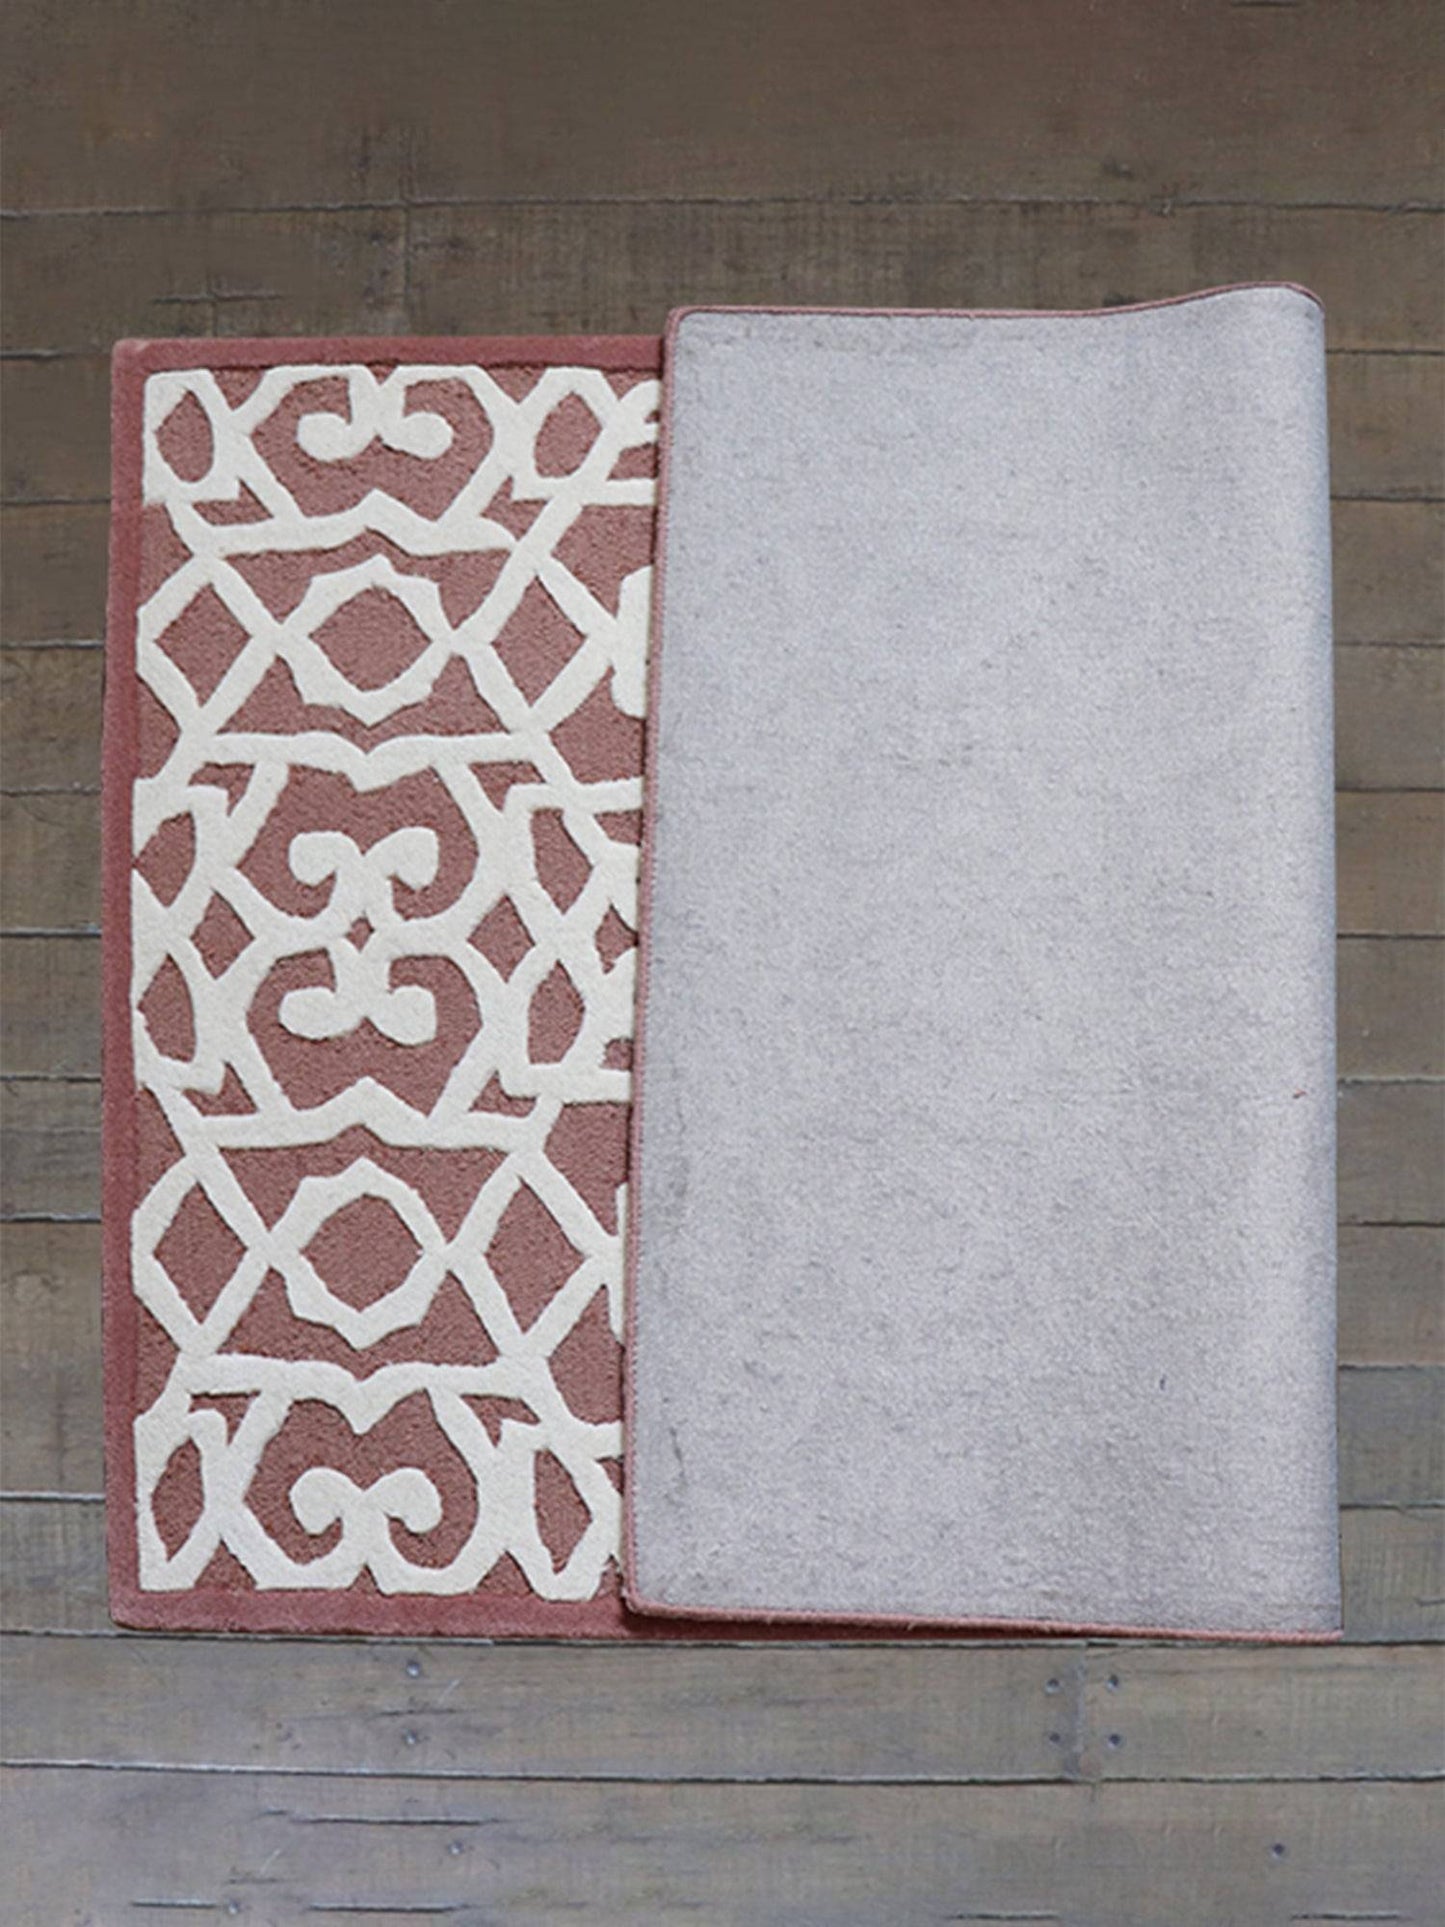 Carpet Hand Tufted 100% Woollen White Rose Trellis - 4ft X 6ft